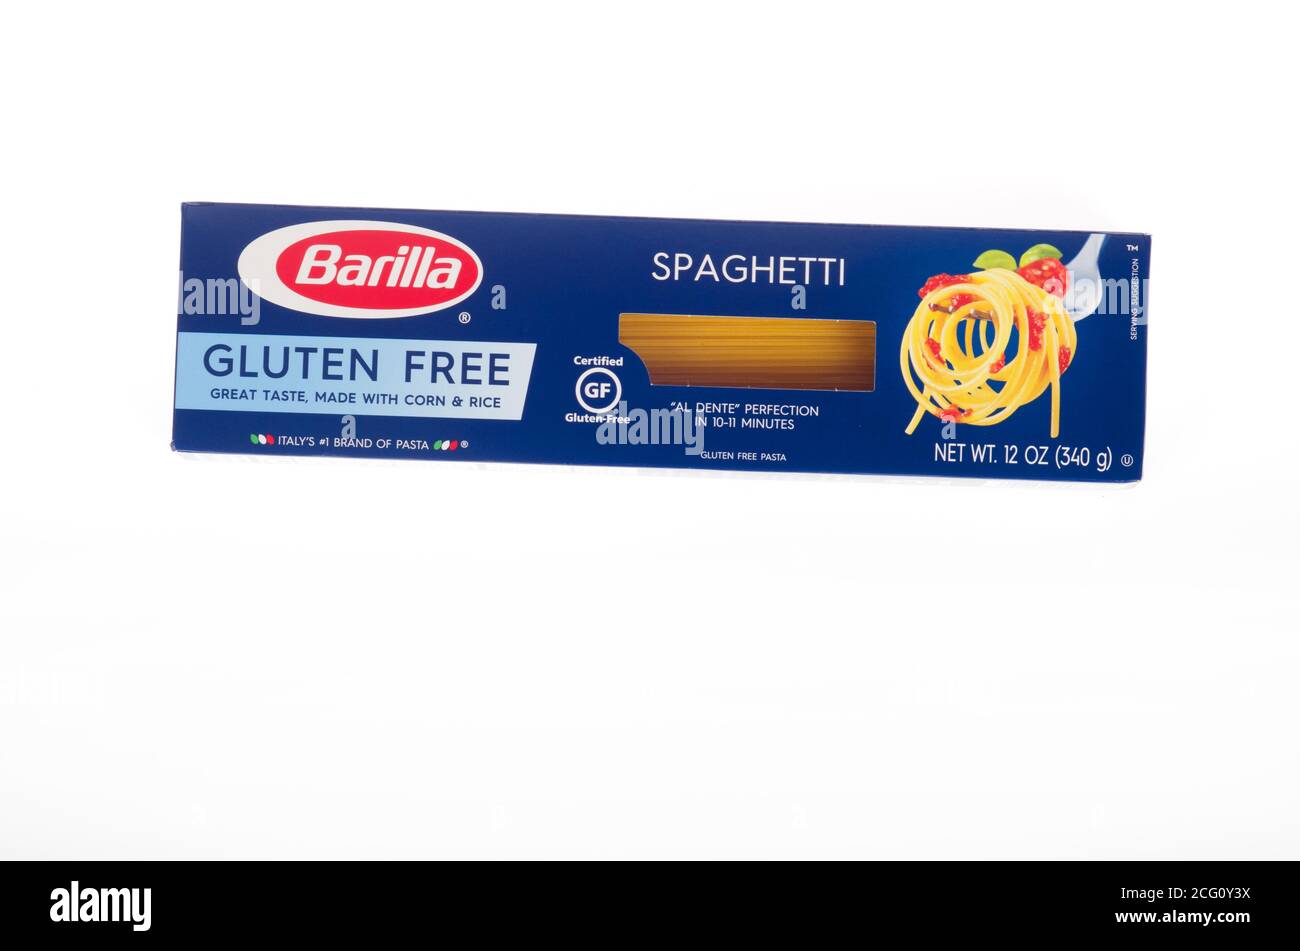 Barilla Gluten Free spaghetti pasta box Stock Photo